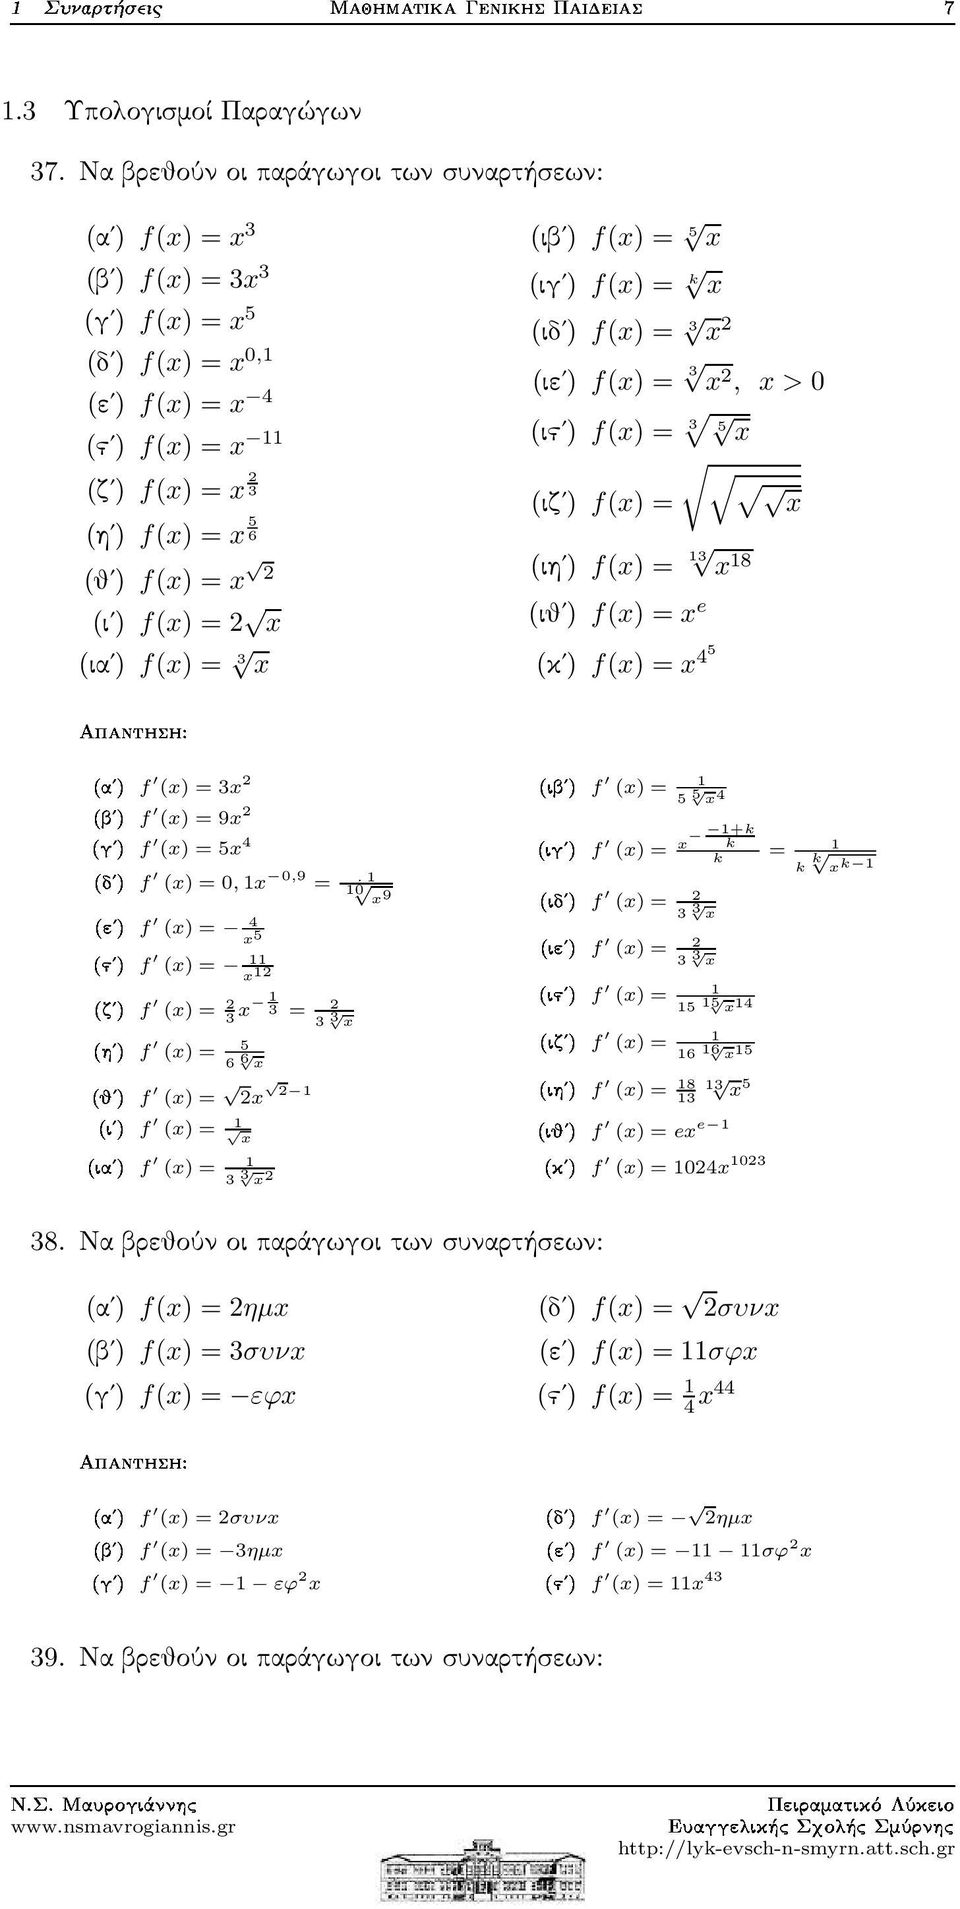 = x (ιαʹ) f(x) = 3 x (ιβʹ) f(x) = 5 x (ιγʹ) f(x) = k x (ιδʹ) f(x) = 3 x (ιεʹ) f(x) = 3 x, x > 0 (ιϛʹ) f(x) = 3 5 x (ιζʹ) f(x) = x (ιηʹ) f(x) = 13 x 18 (ιθʹ) f(x) = x e (κʹ) f(x) = x 45 (x) = 3x µf